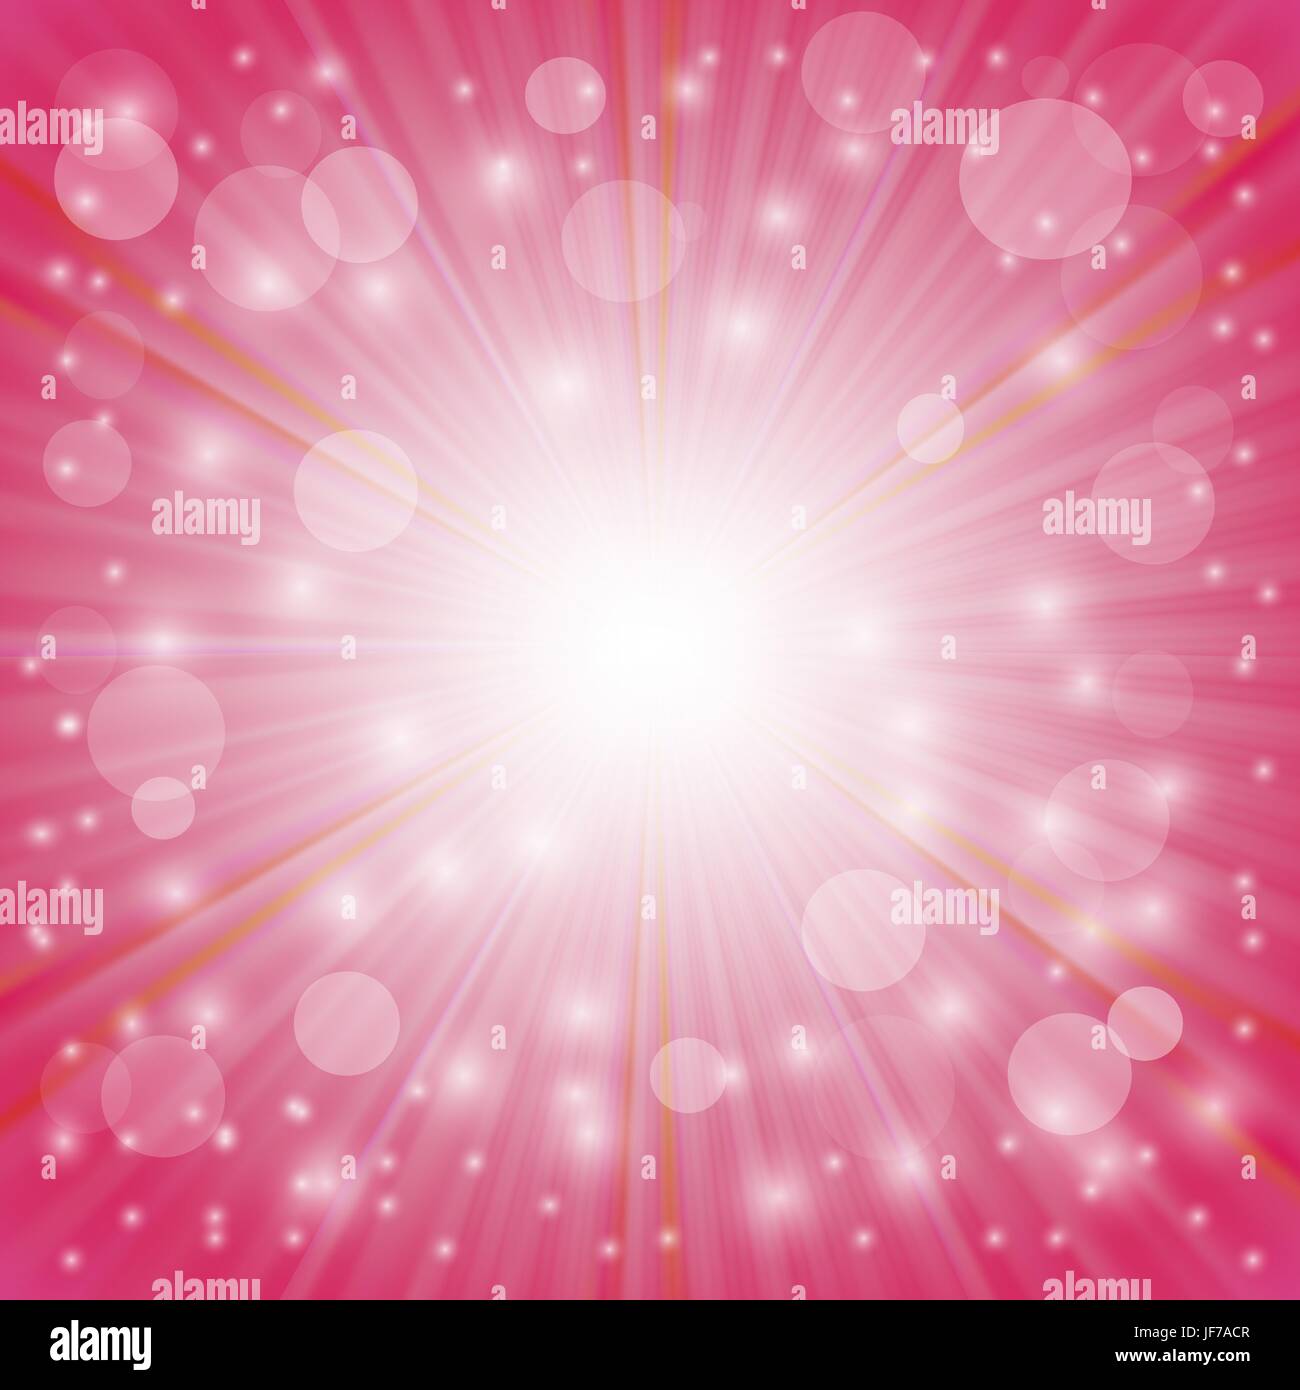 Rosa Hintergrund. Sonne platzen auf rosa Hintergrund. Ray-Hintergrund mit Sternen Stock Vektor